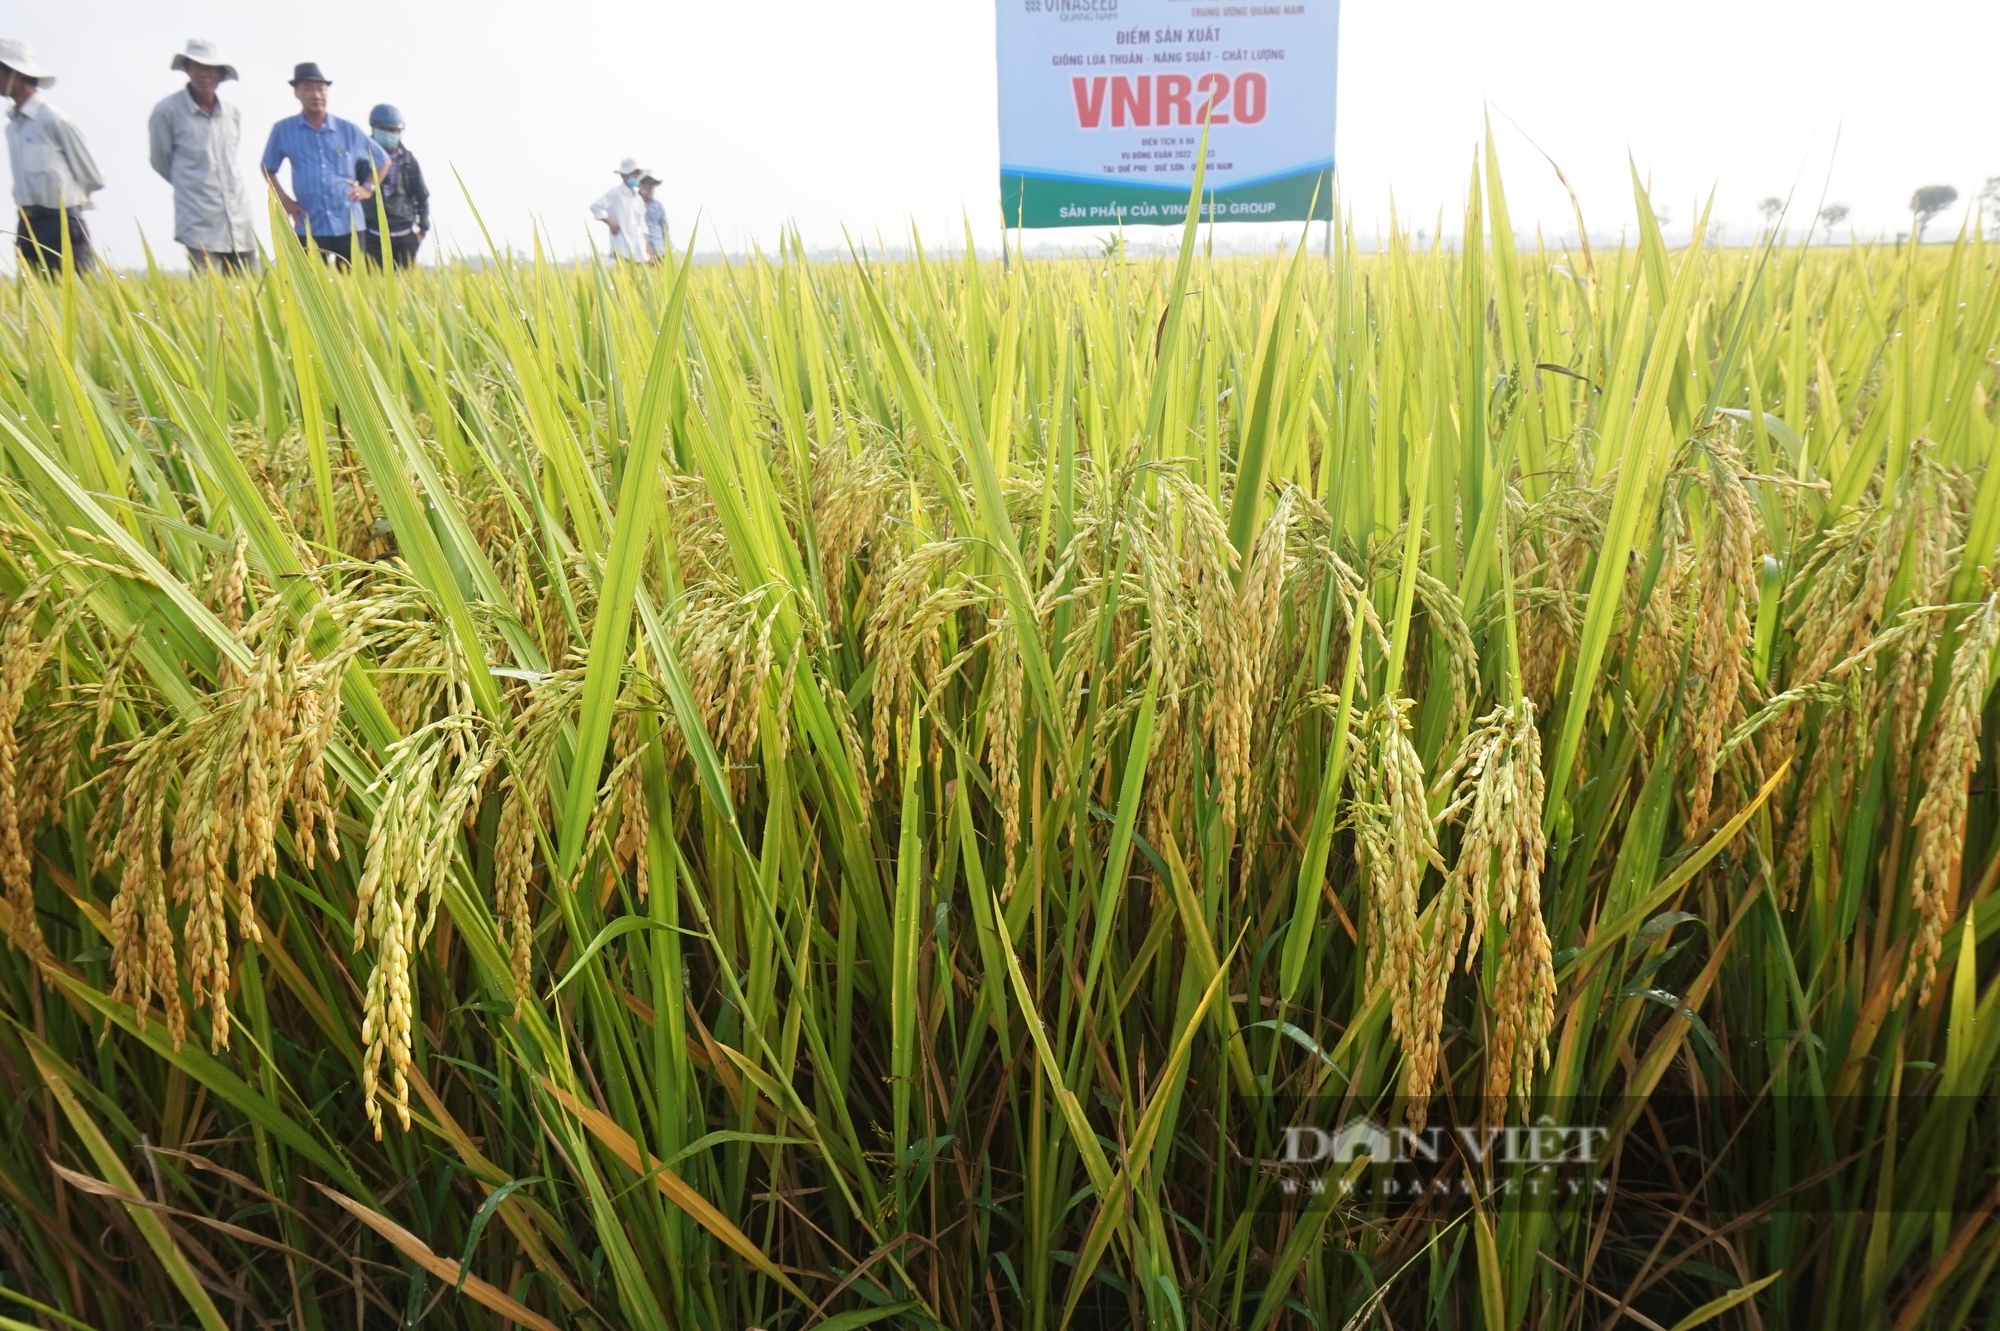 Bộ tứ lúa giống của Vinaseed “tỏa sáng” rực rỡ trên nhiều chân đất, nông dân xứ Quảng mê mẩn - Ảnh 4.